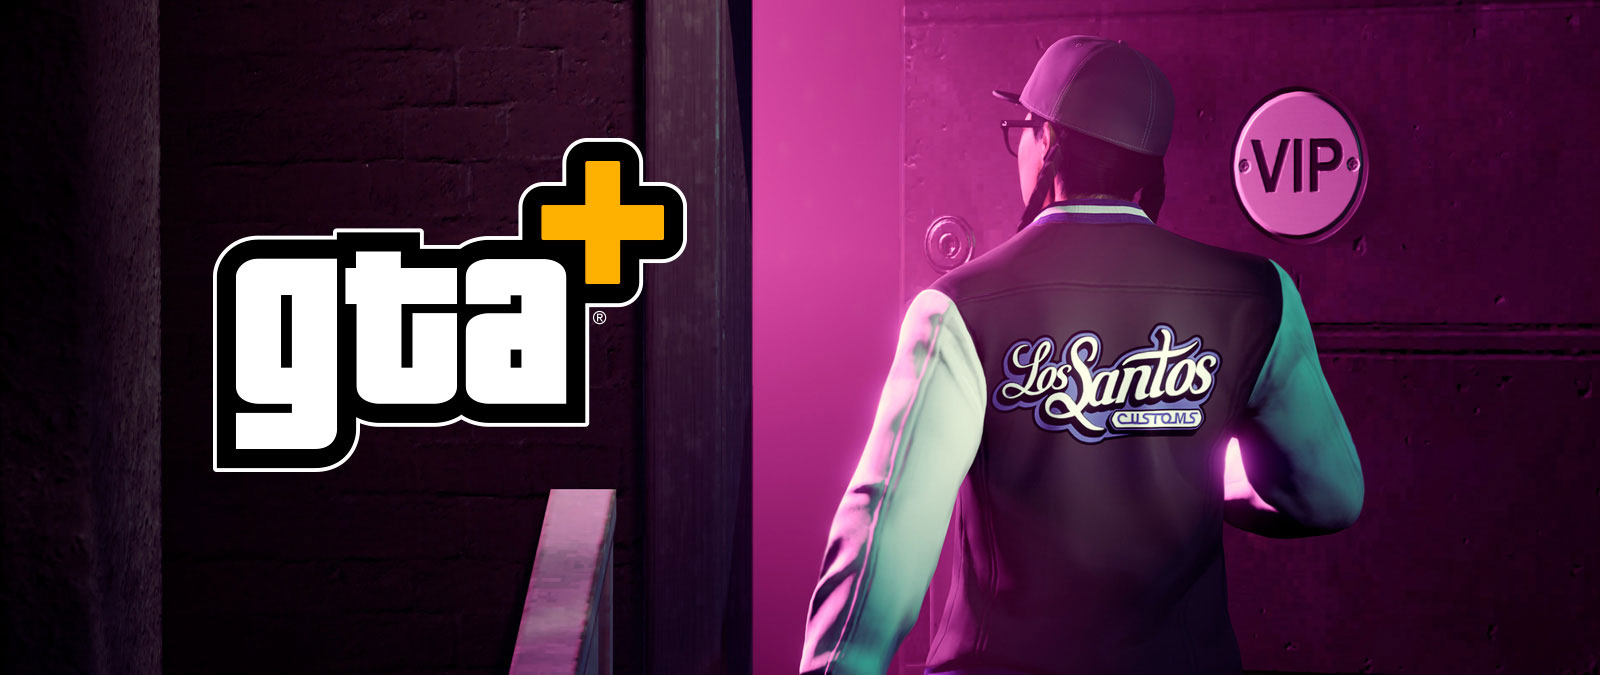 GTA+-logo, Een personage met een Los Santos Customs-jas loopt een viproom in